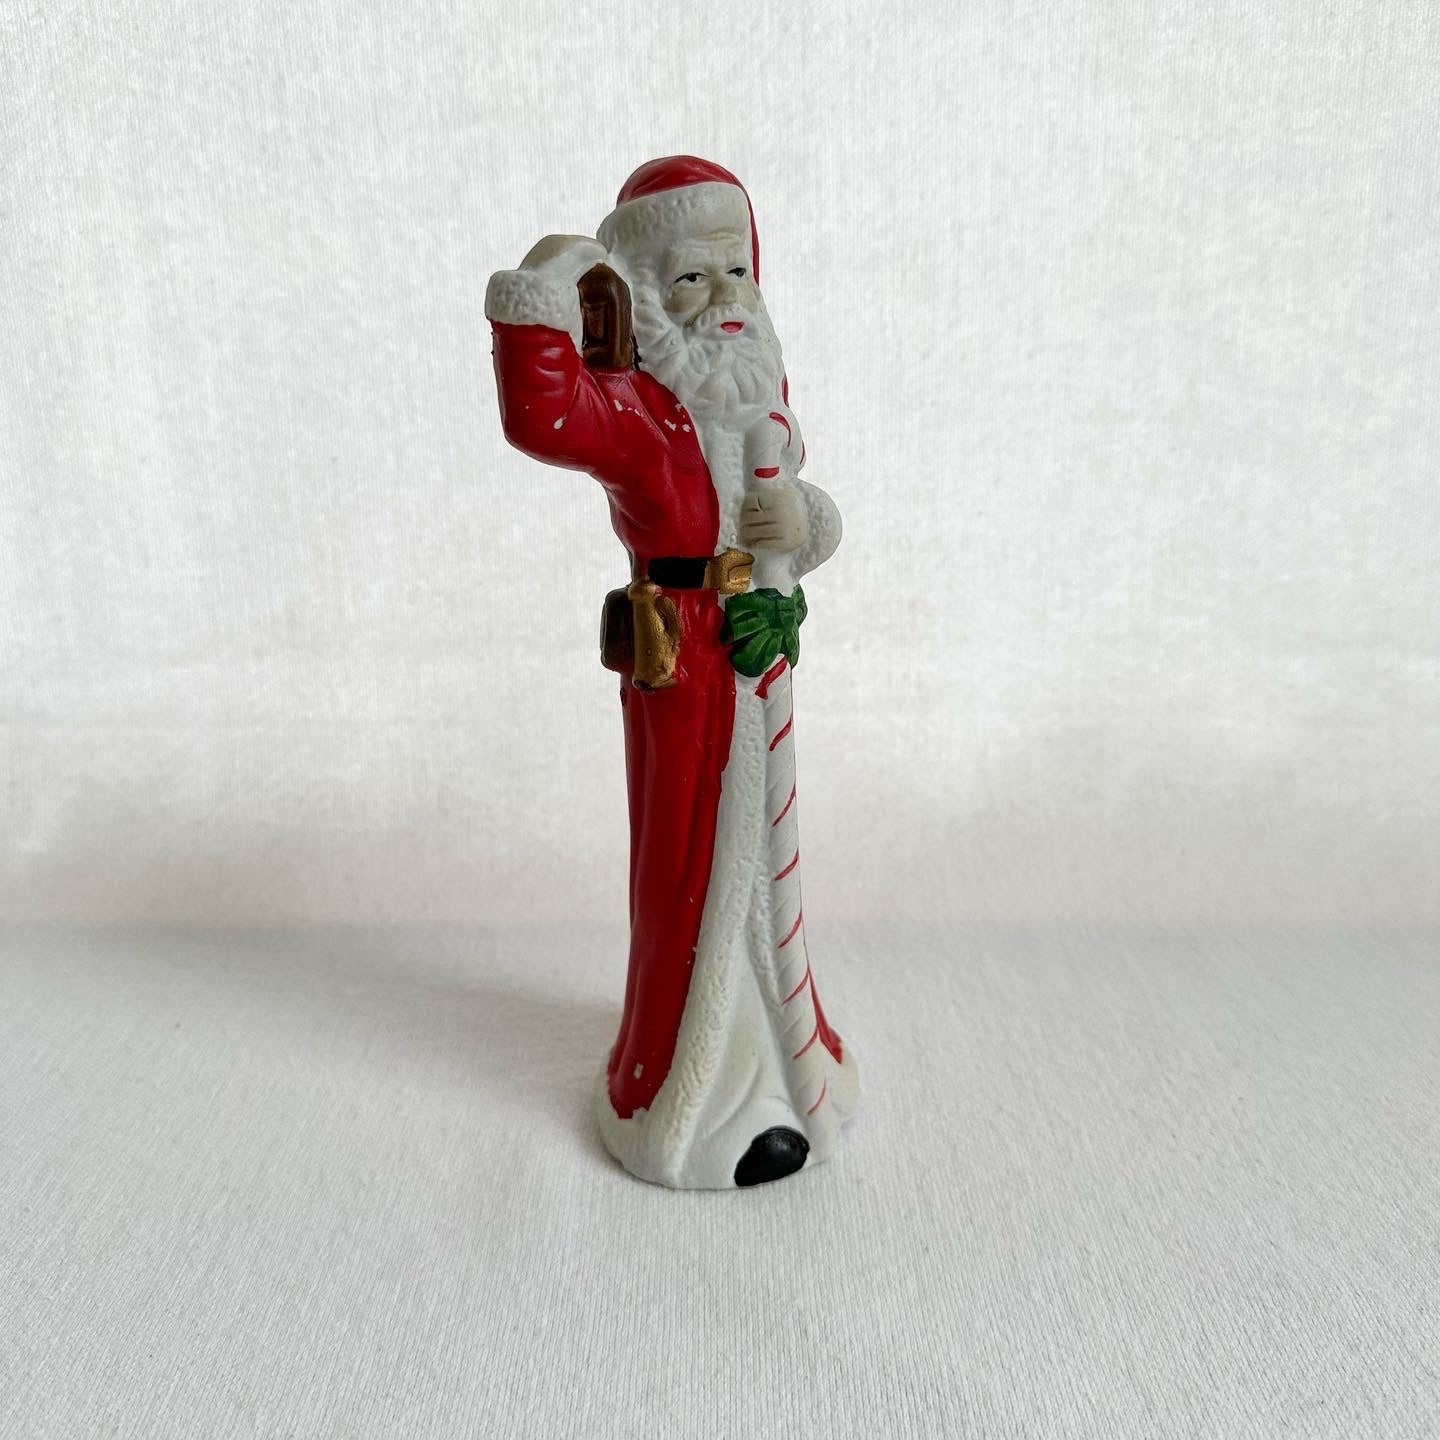 Tall Santa Claus